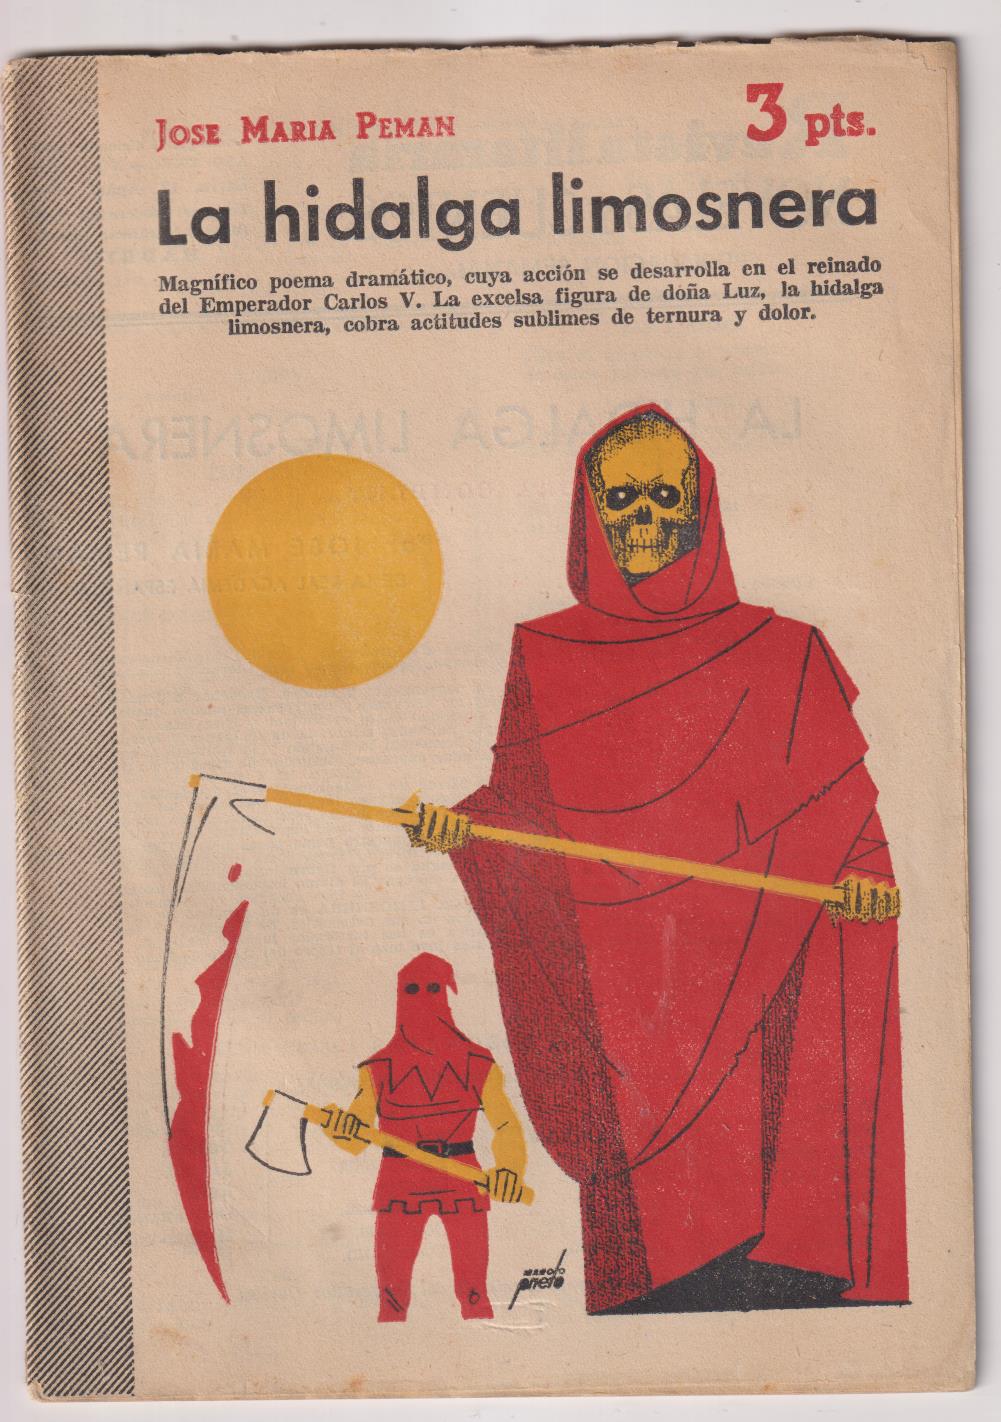 Revista literaria Novelas y Cuentos nº 1233. La Hidalga Limosnera por J. María Pemán, 1954